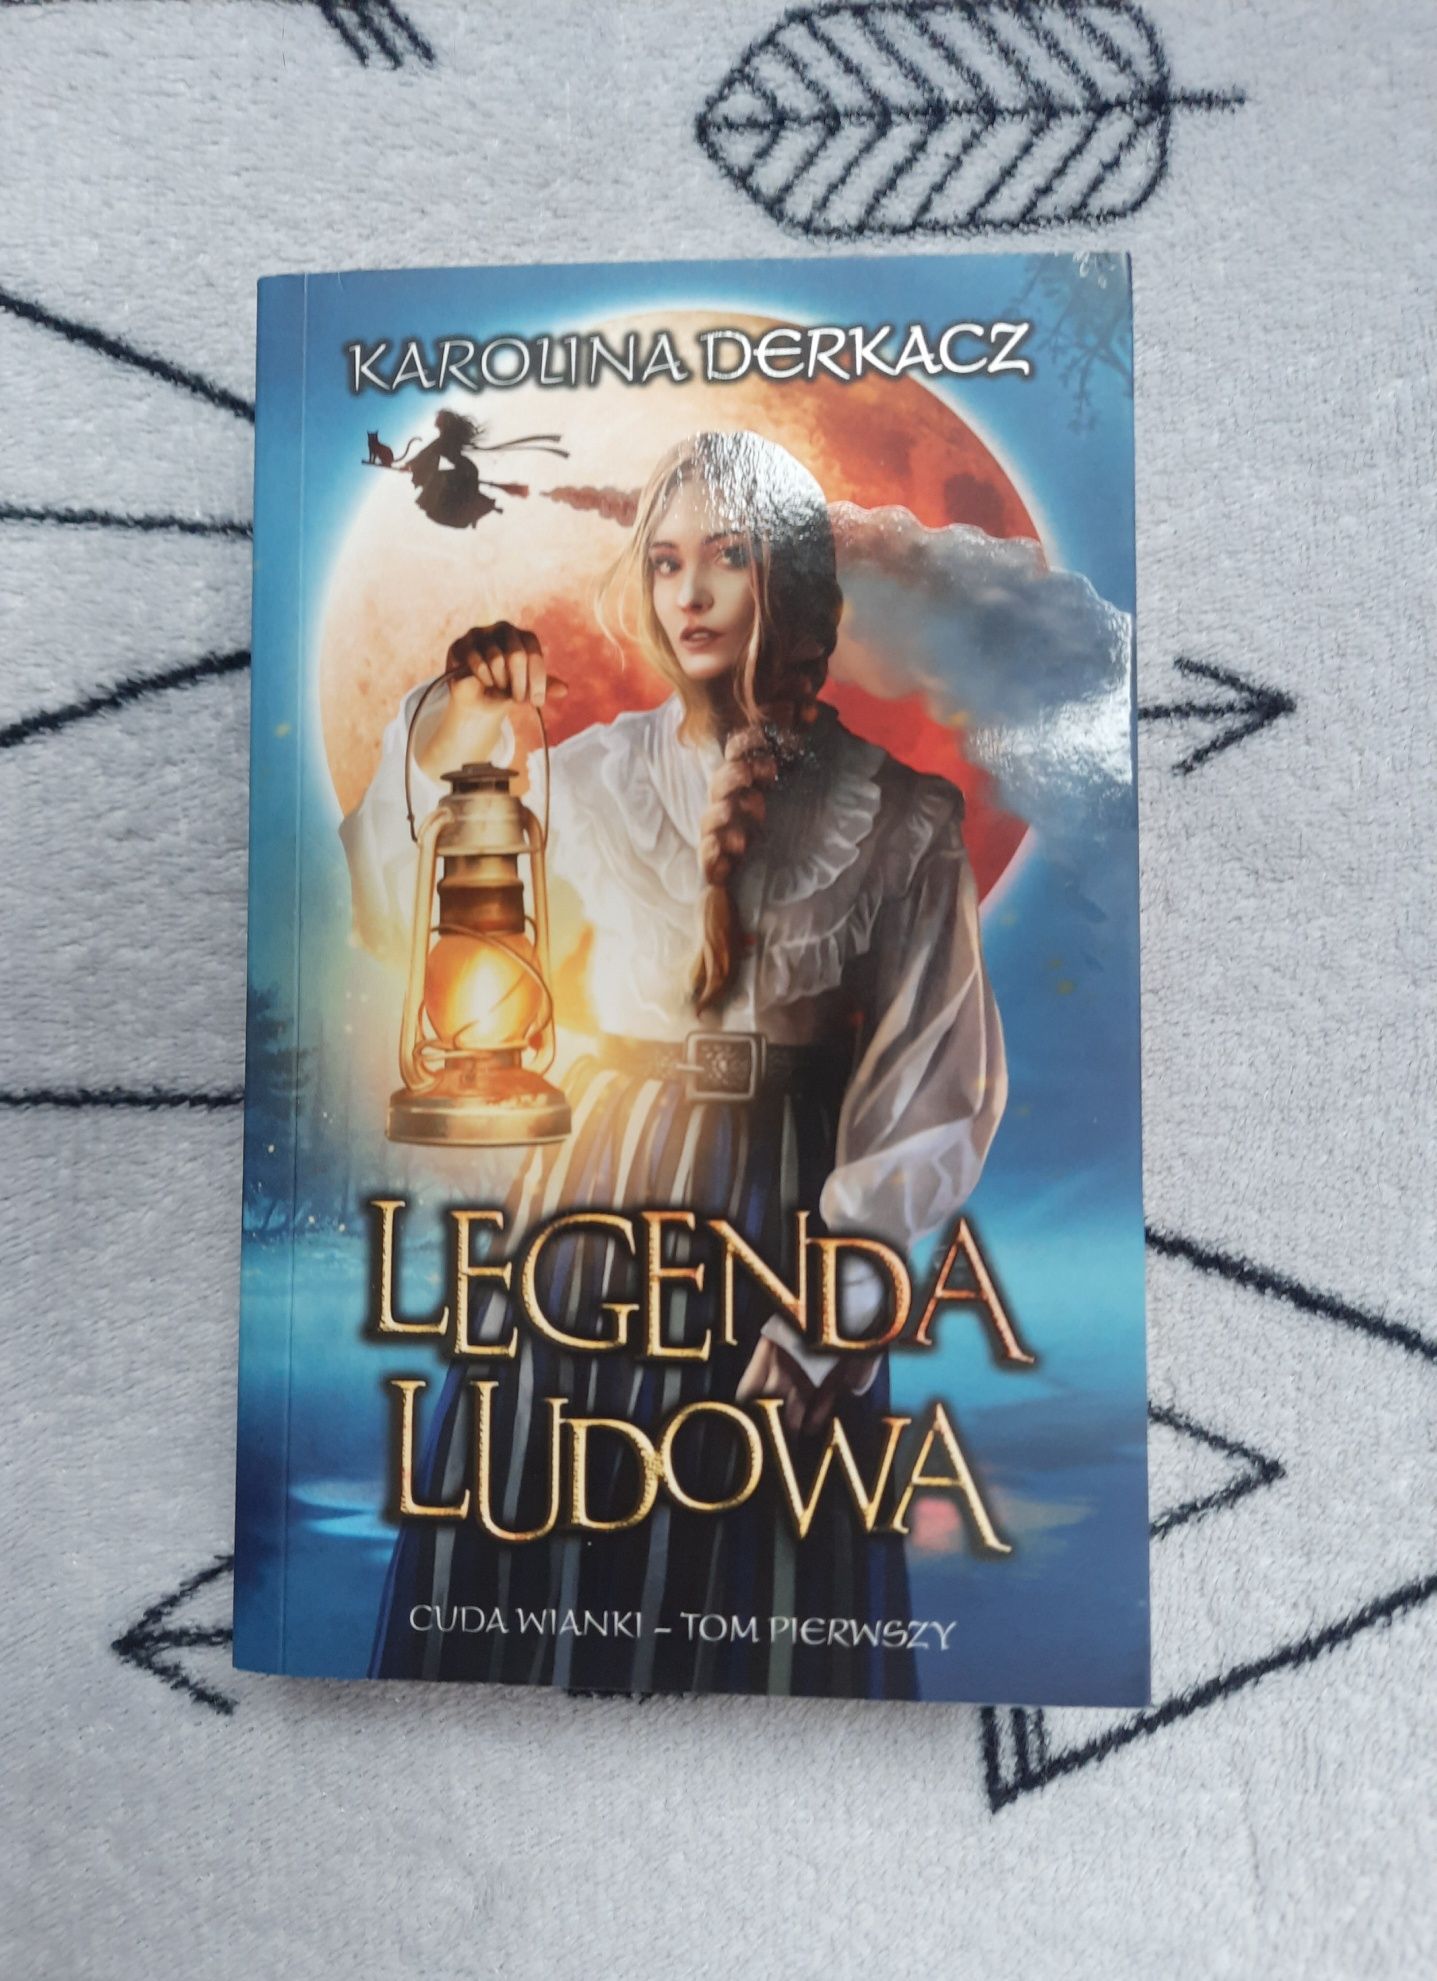 Książka Legenda Ludowa fantastyka słowiańska kryminał slavic book